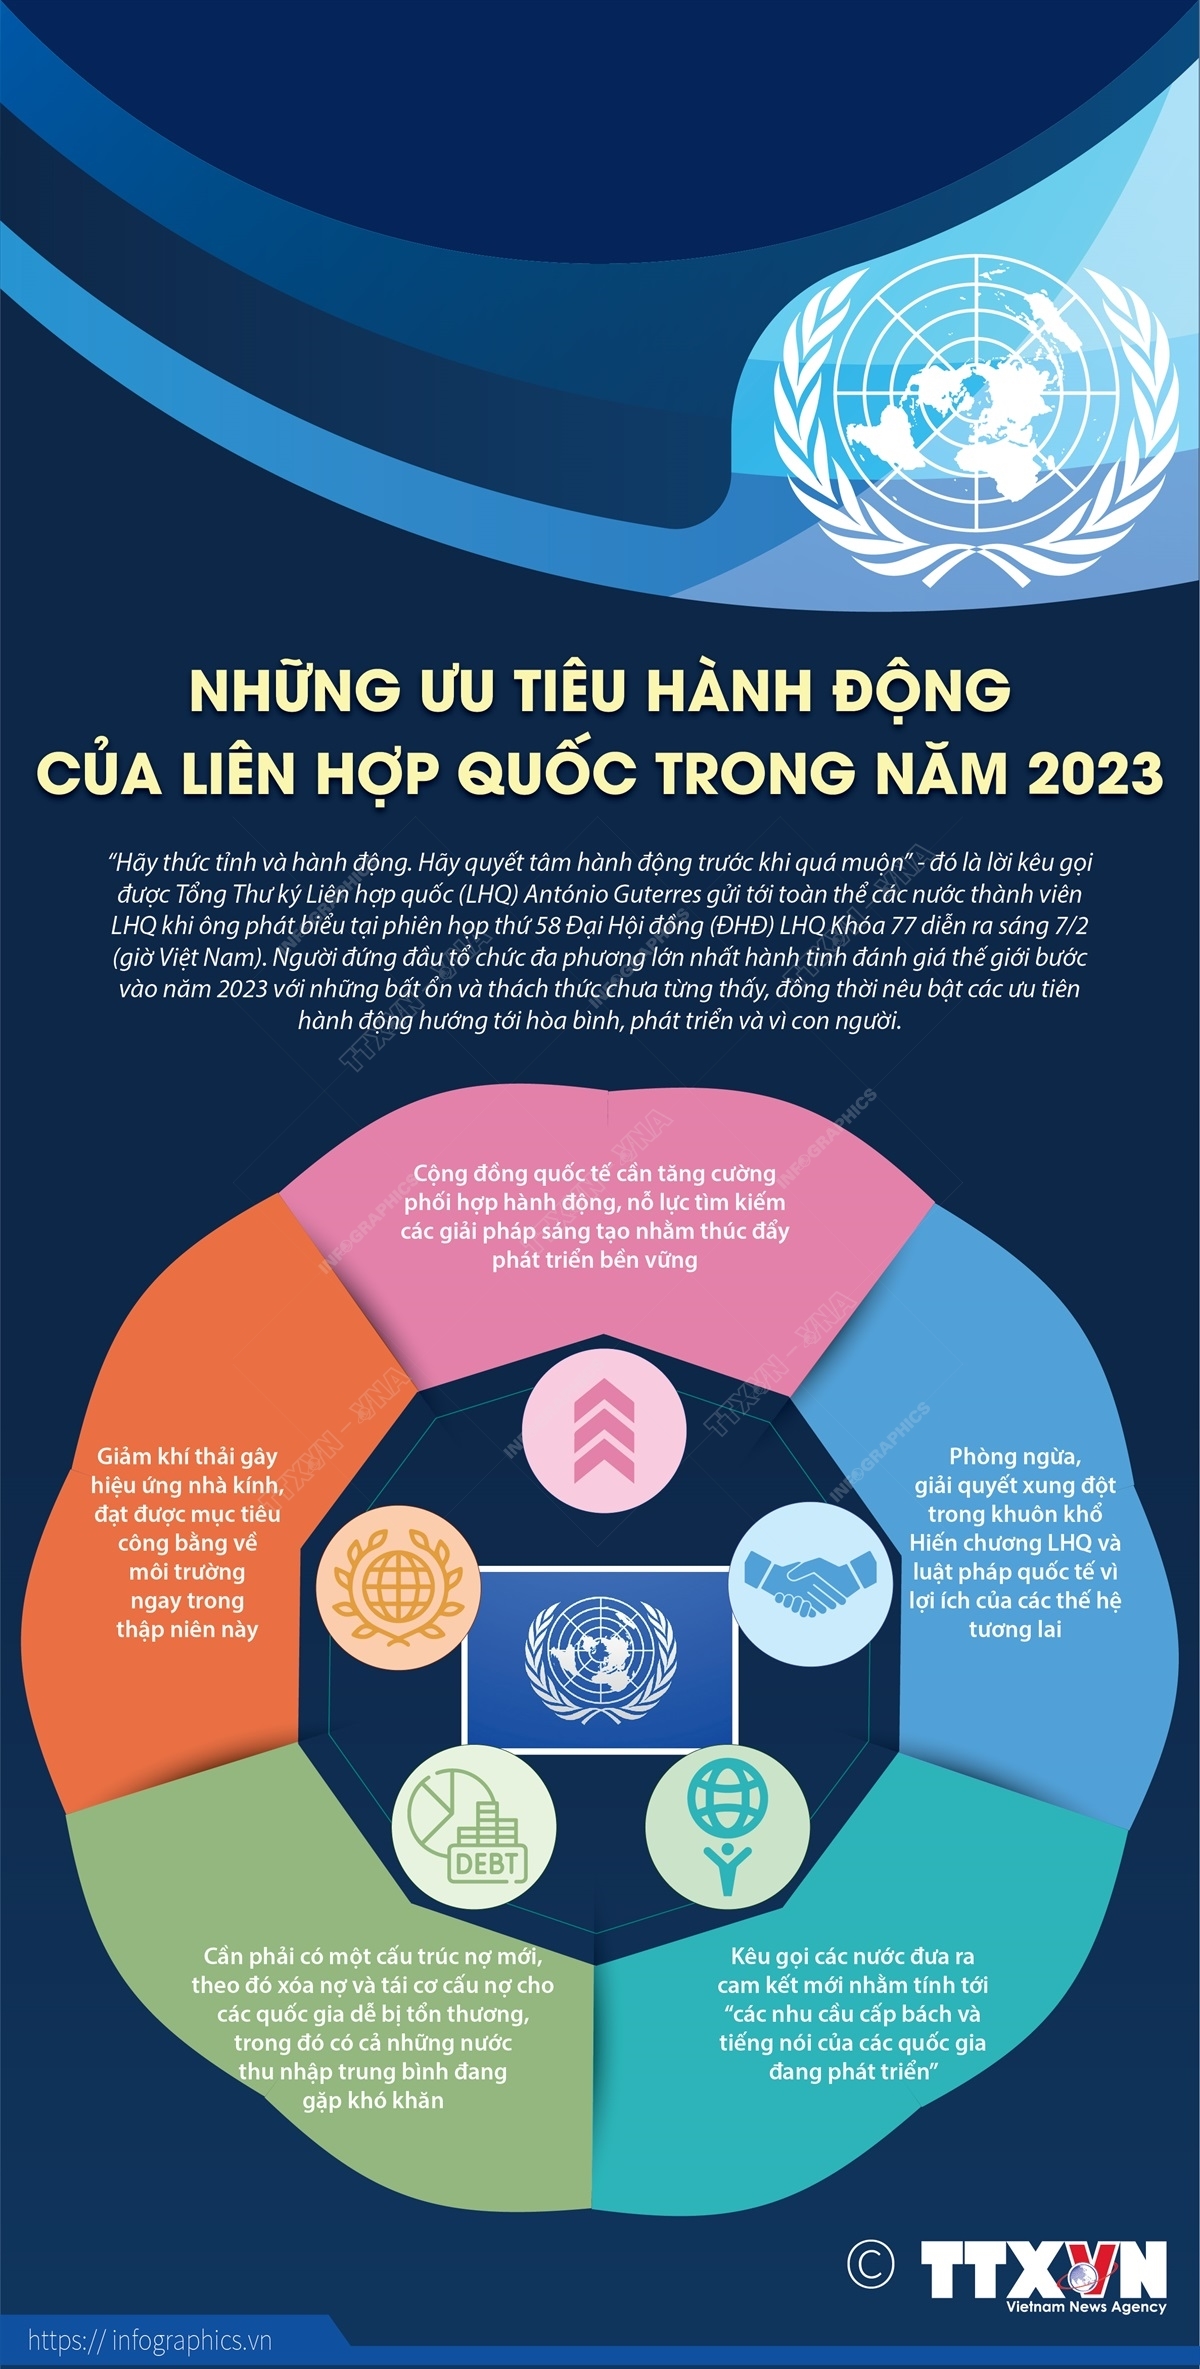 Những ưu tiêu hành động của Liên hợp quốc trong năm 2023